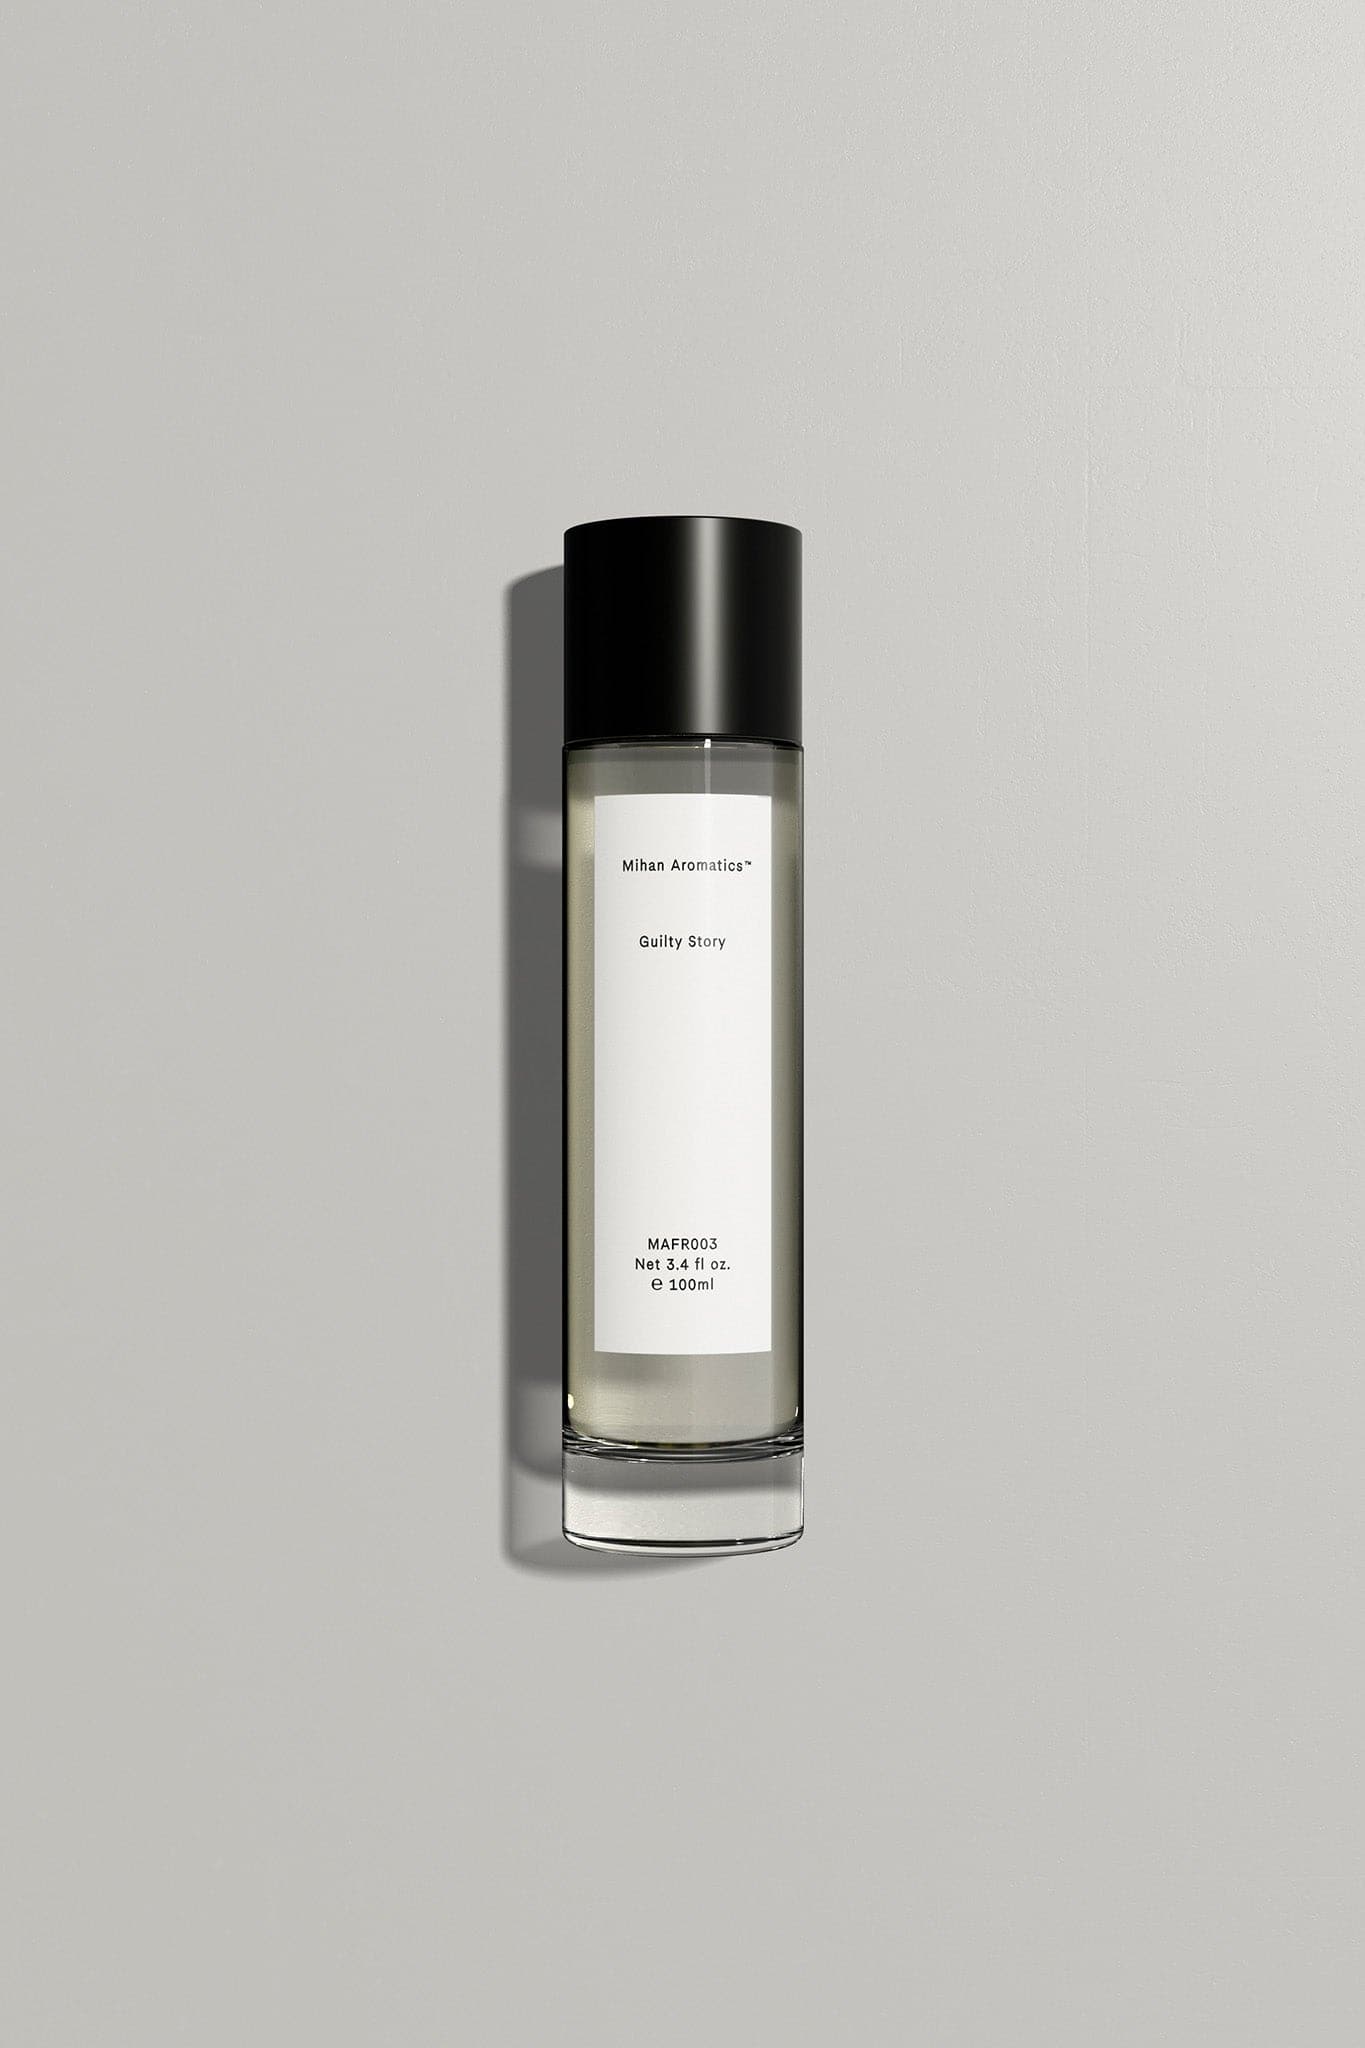 Mihan Aromatics - Guilty Story Parfum - Marz Designs AUMihan Aromatics